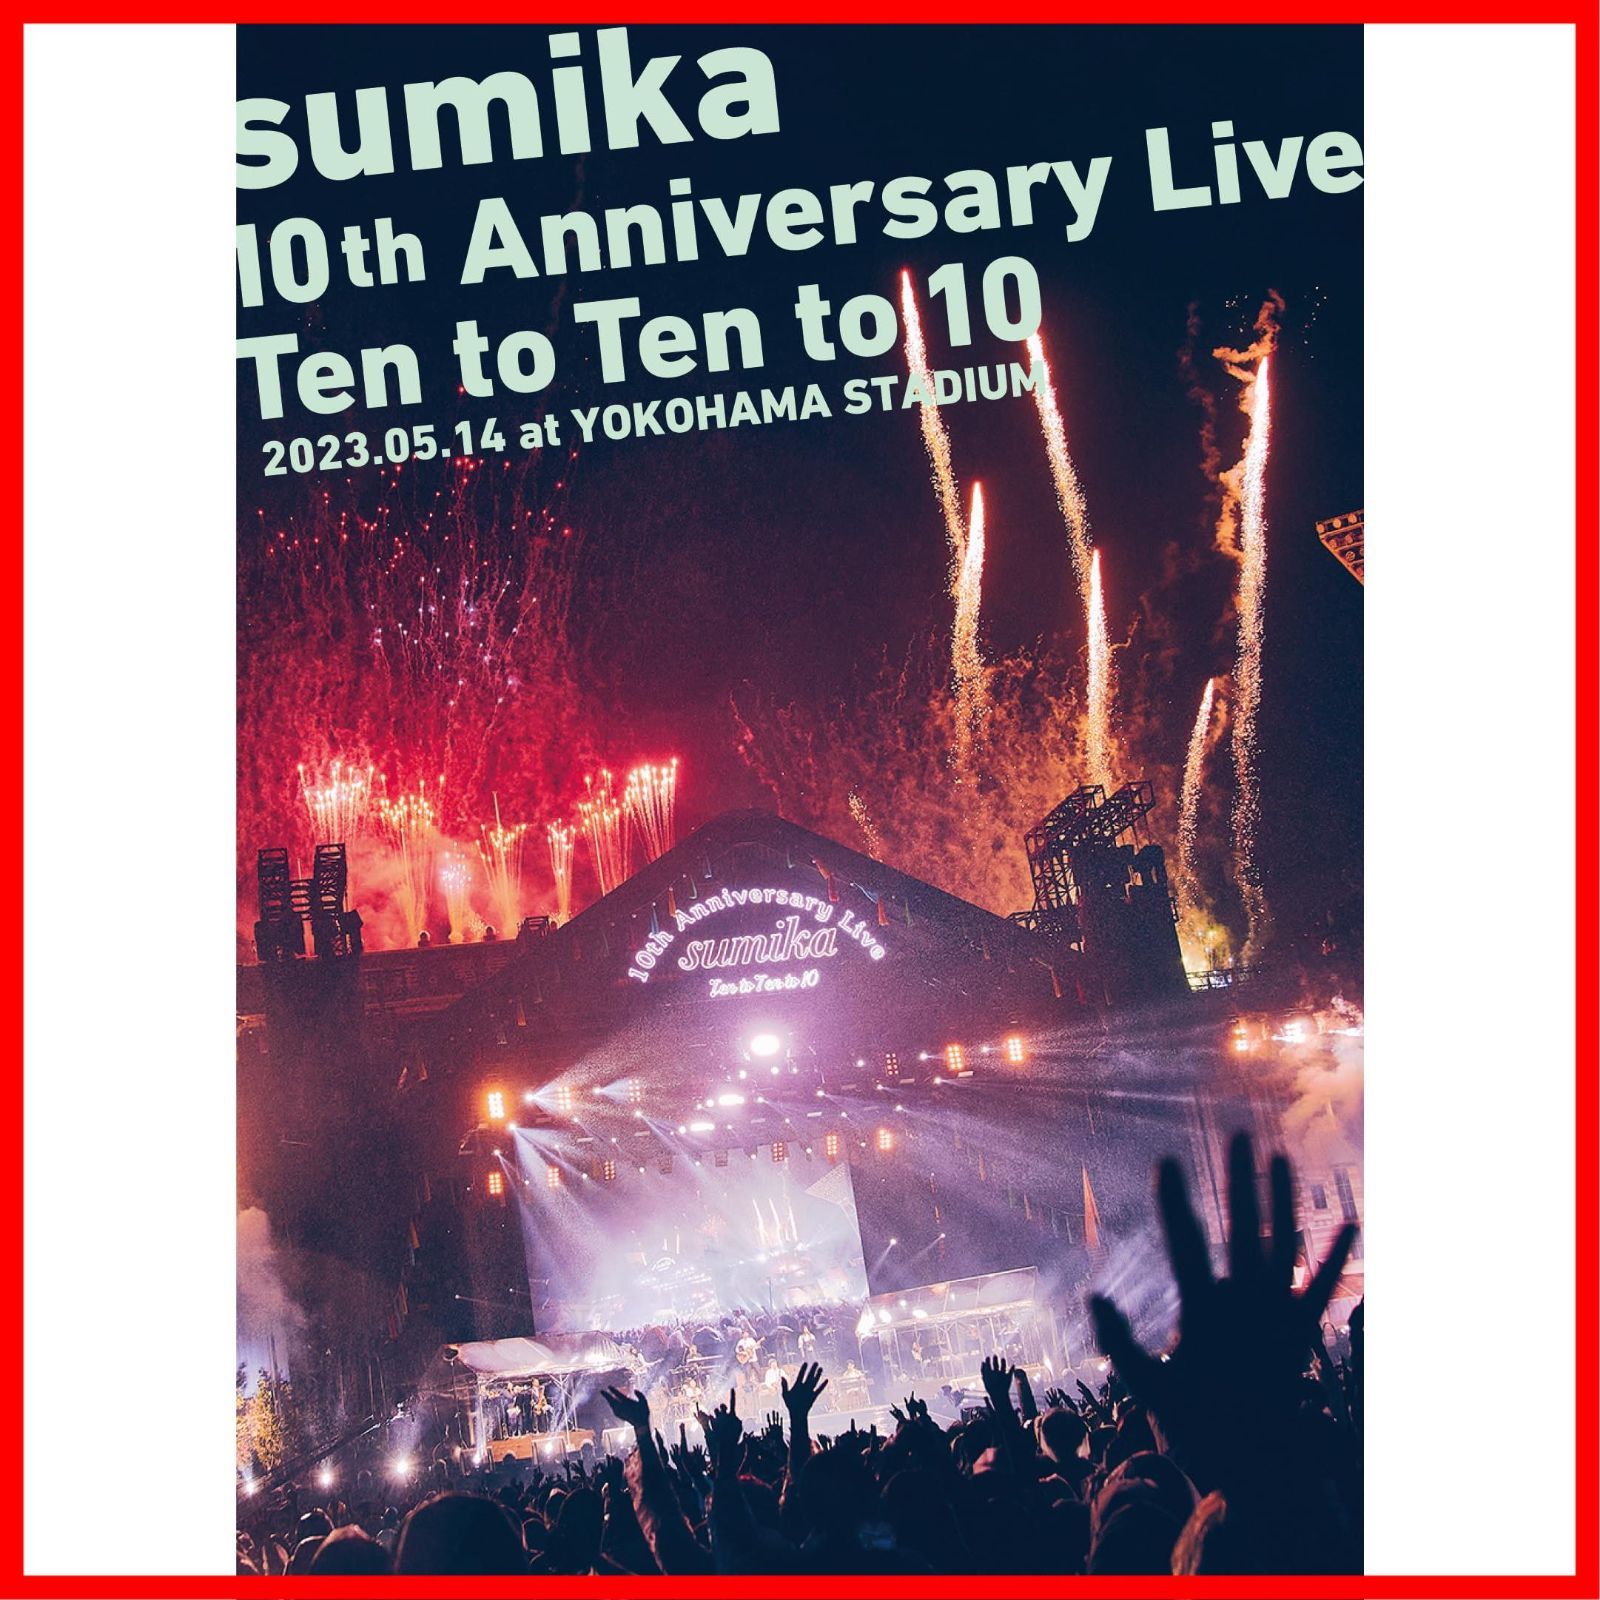 新品未開封】sumika 10th Anniversary Live『Ten to Ten to 10 